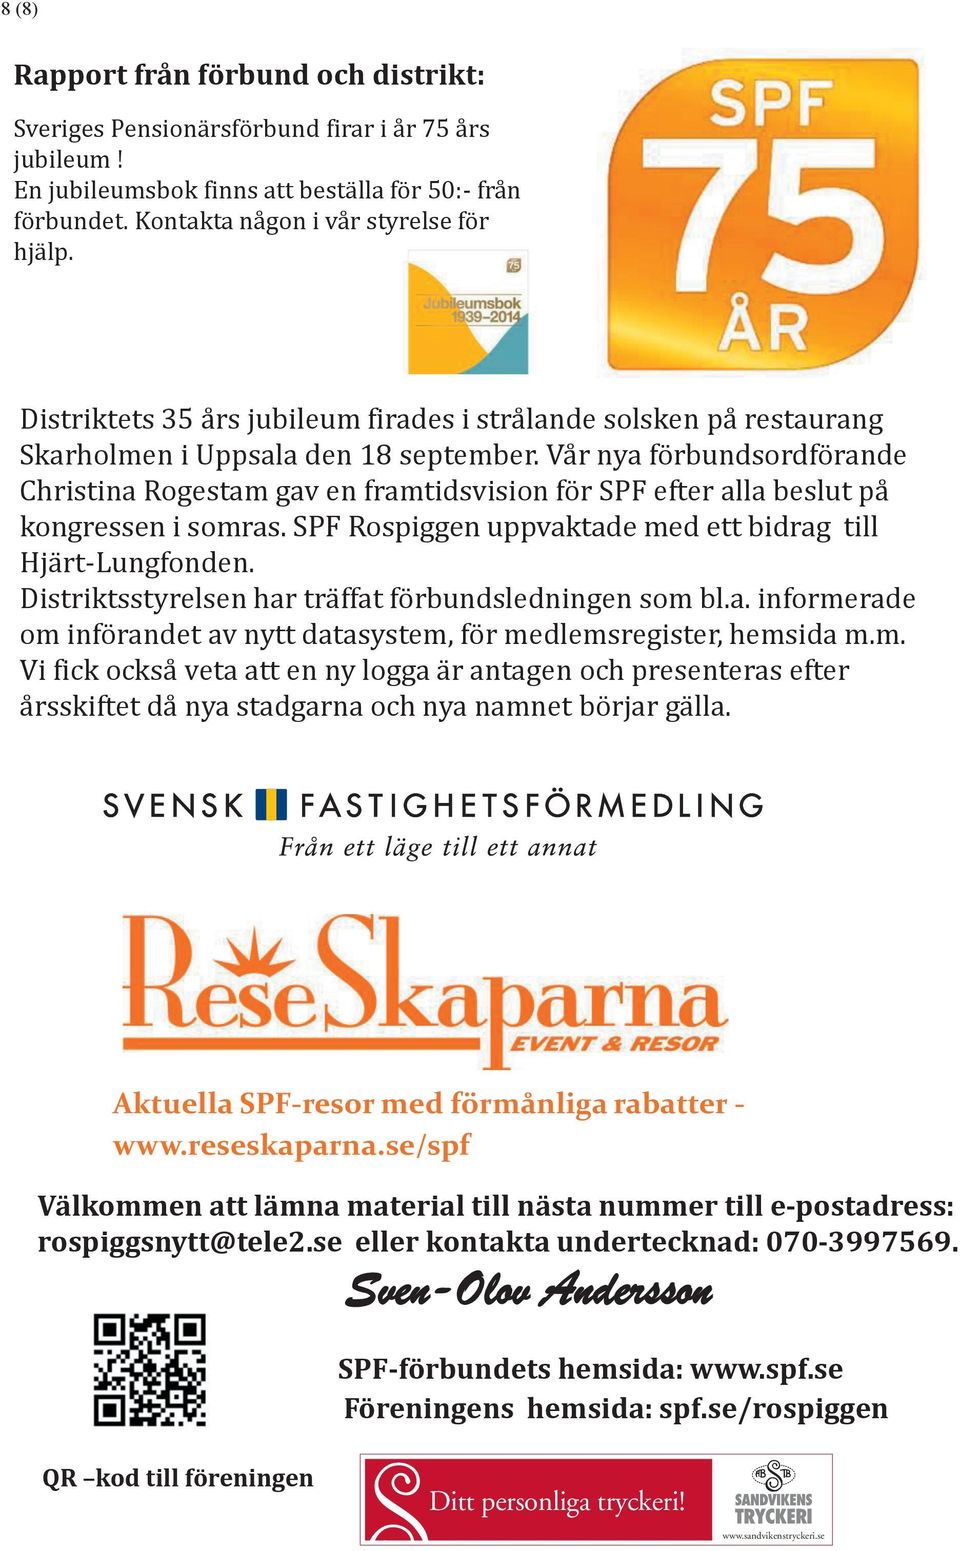 Vår nya förbundsordförande Christina Rogestam gav en framtidsvision för SPF efter alla beslut på kongressen i somras. SPF Rospiggen uppvaktade med ett bidrag till Hjärt-Lungfonden.